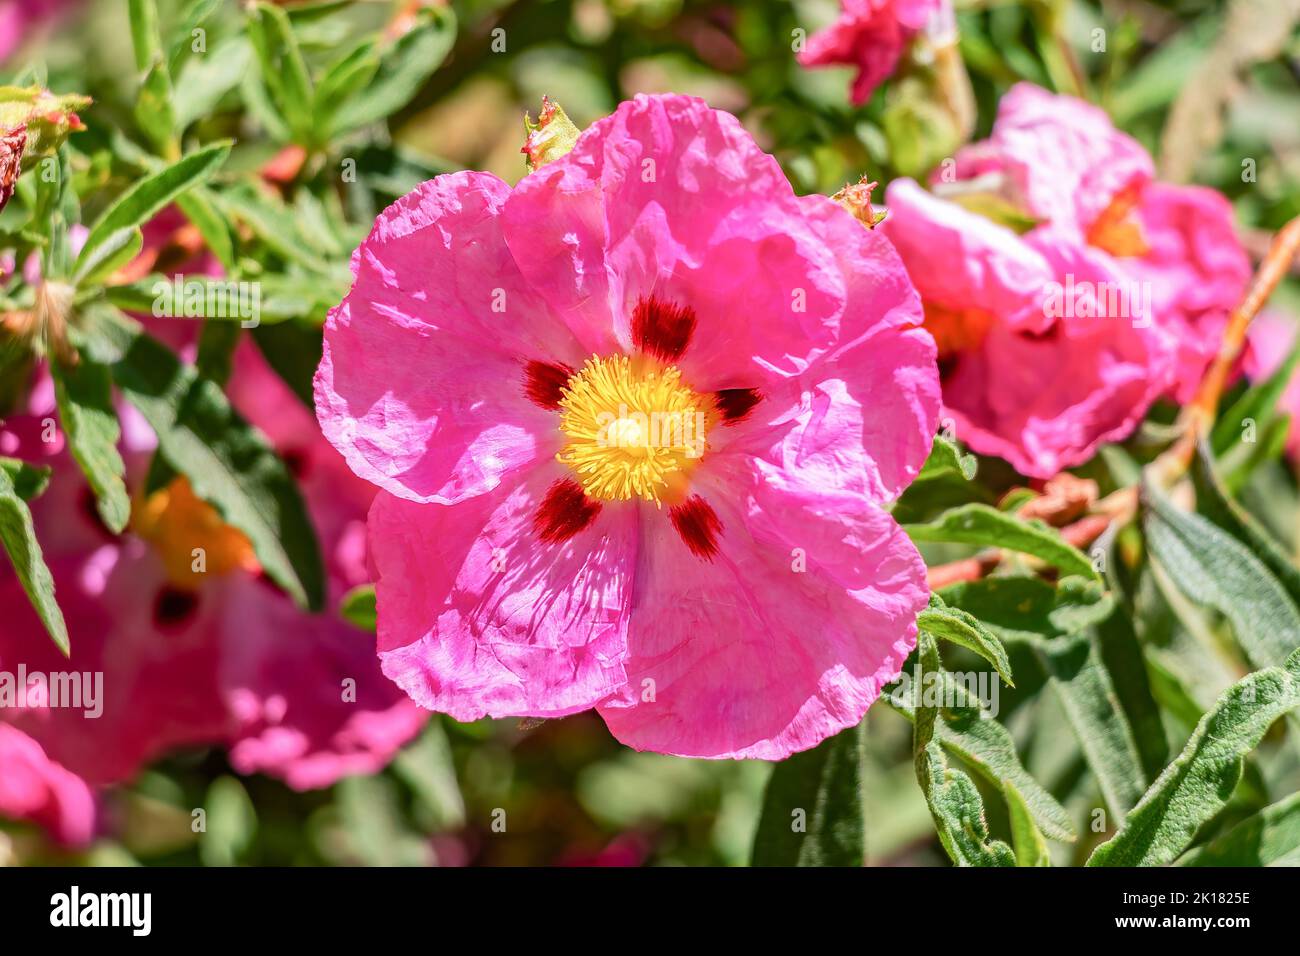 La fleur rose de Cistus ladanifère est une espèce de plante à fleurs de la famille des Cistaceae. Il est originaire de la région de la Méditerranée occidentale. Noms communs Banque D'Images